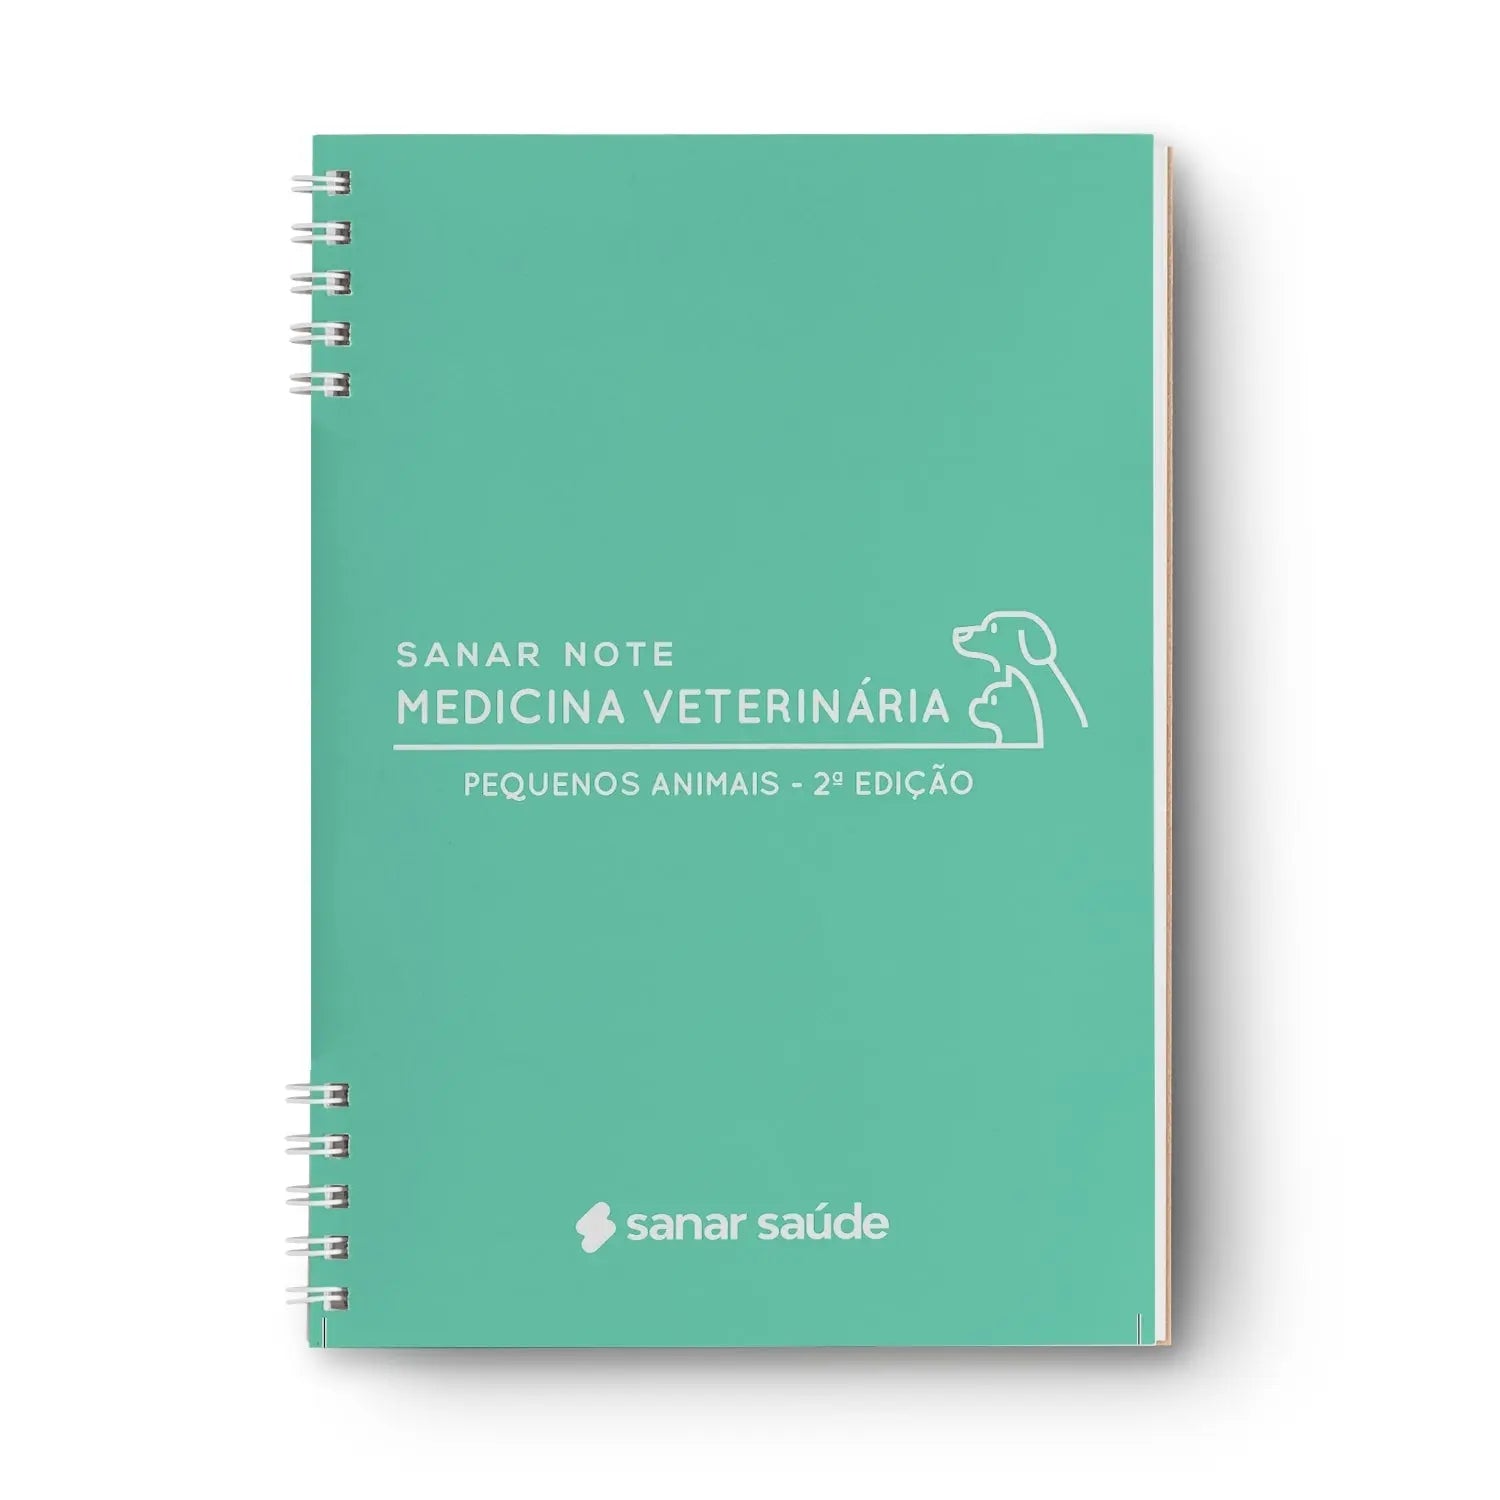 Imagem do livro Sanar Note Medicina Veterinária Pequenos Animais 2ª Edição